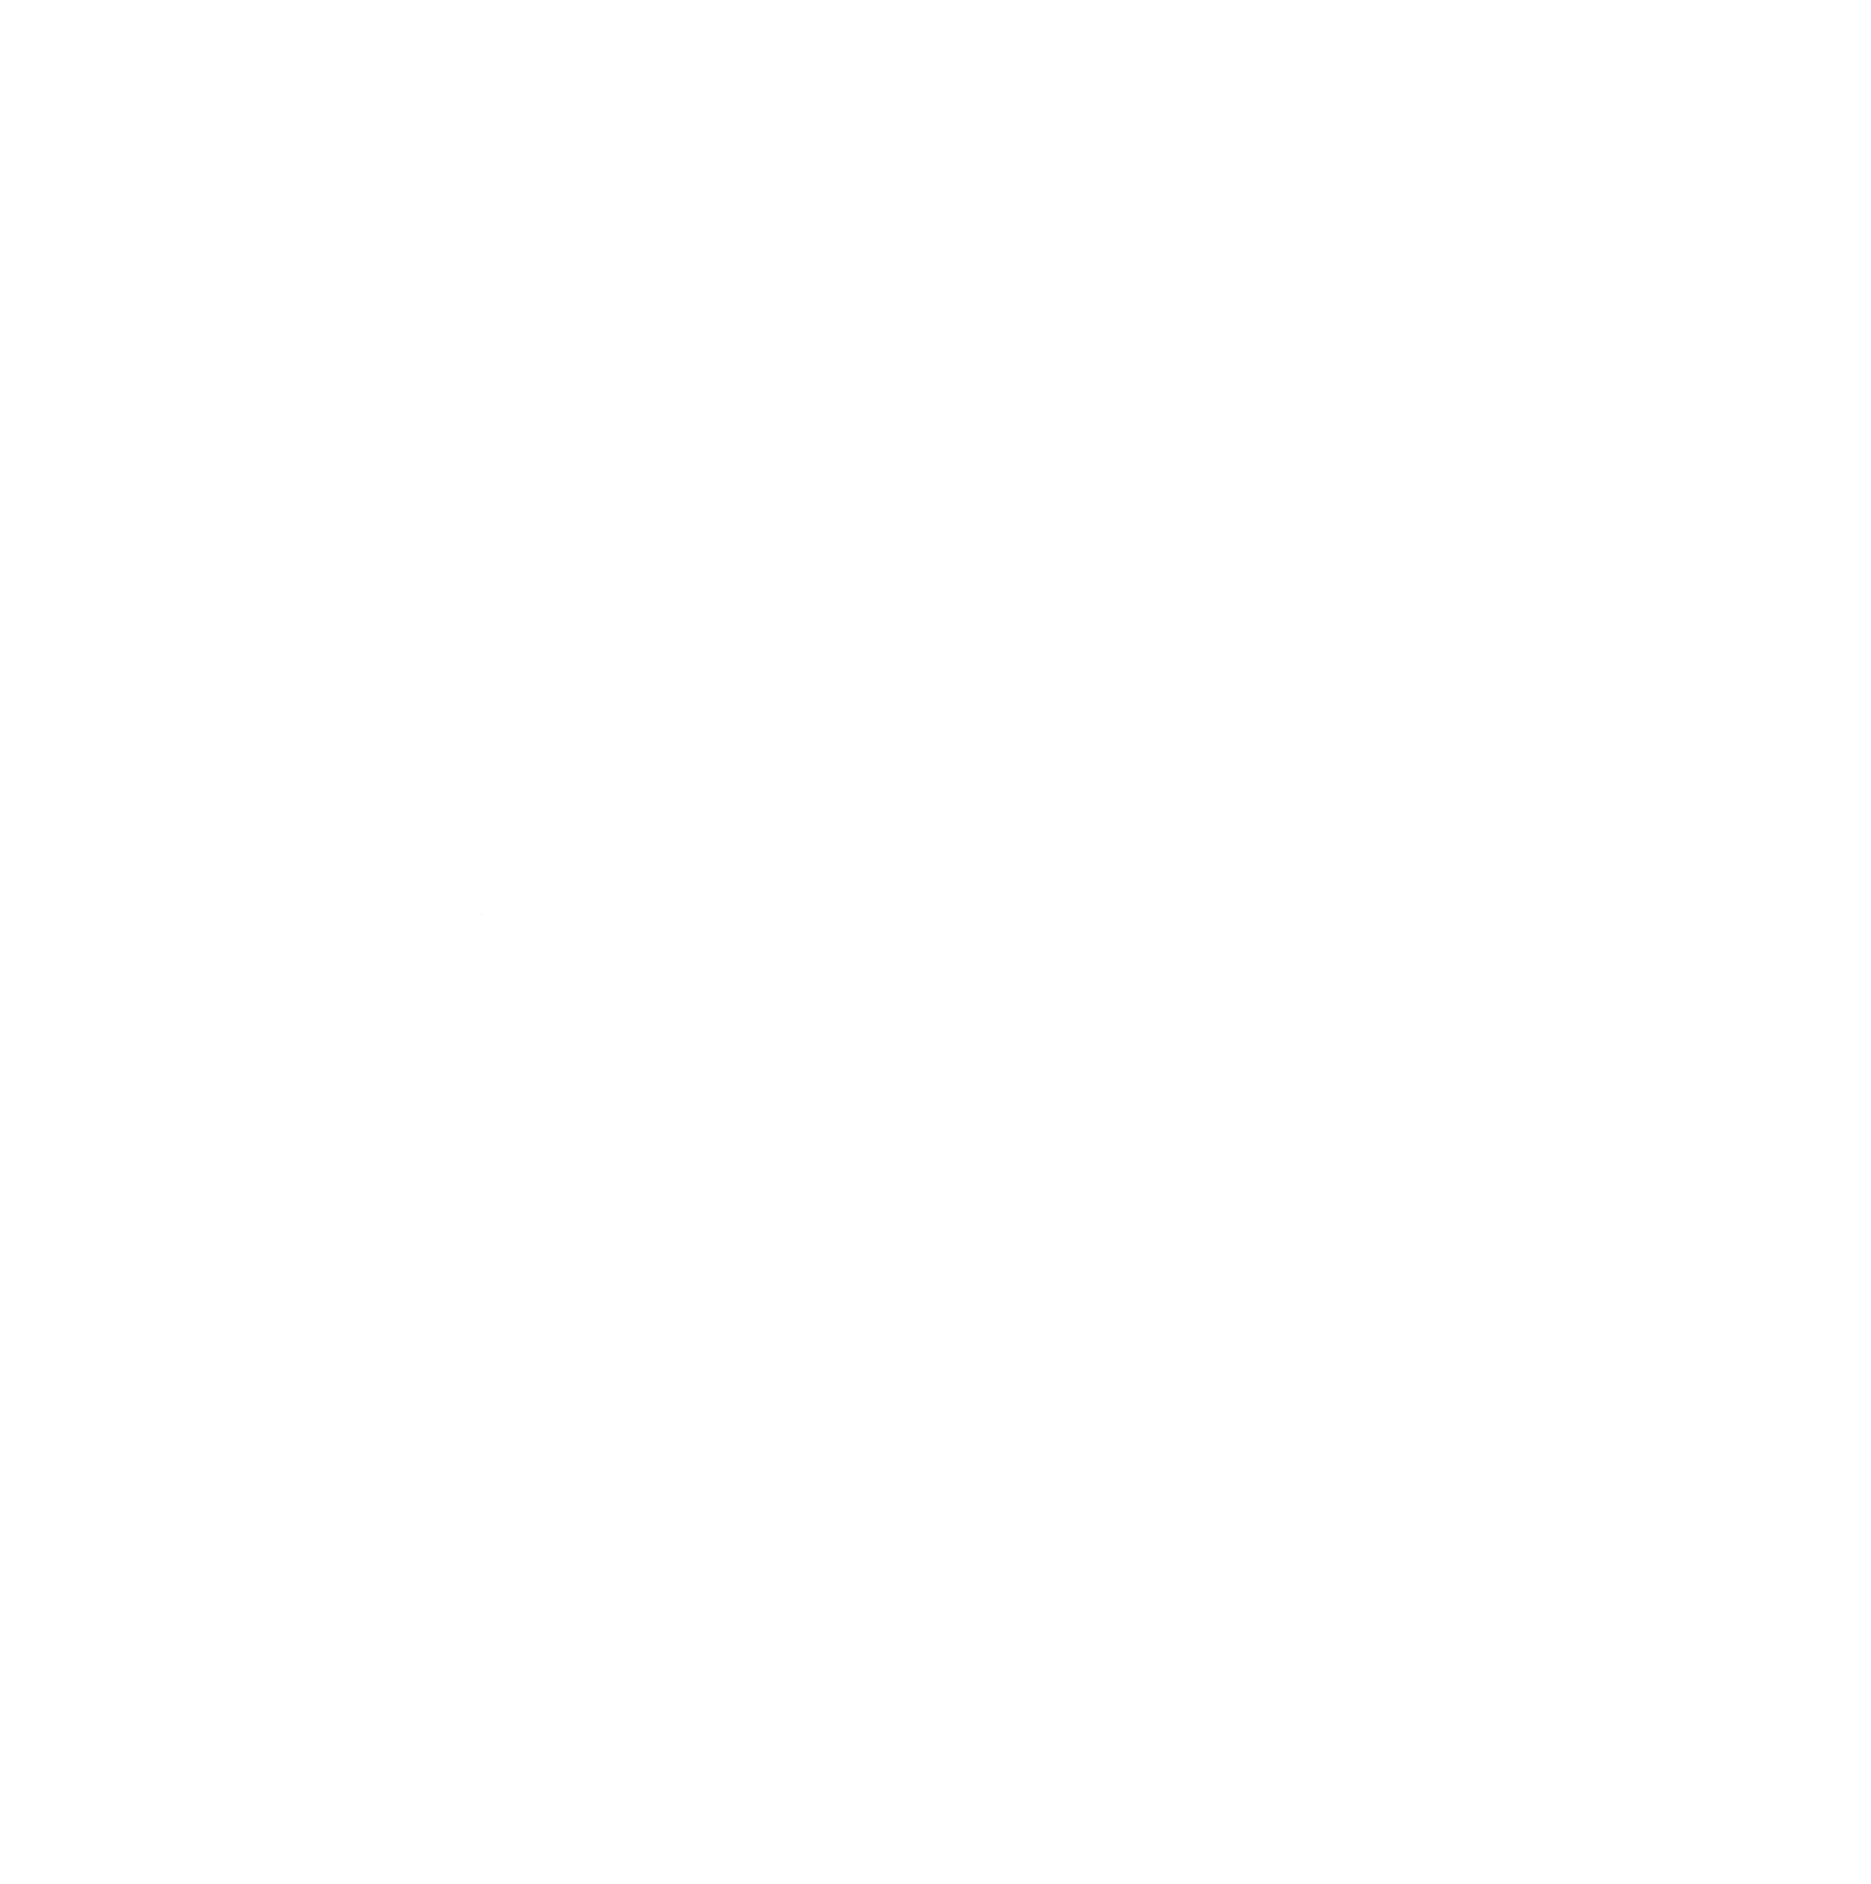 Certified by DIN EN ISO 9001